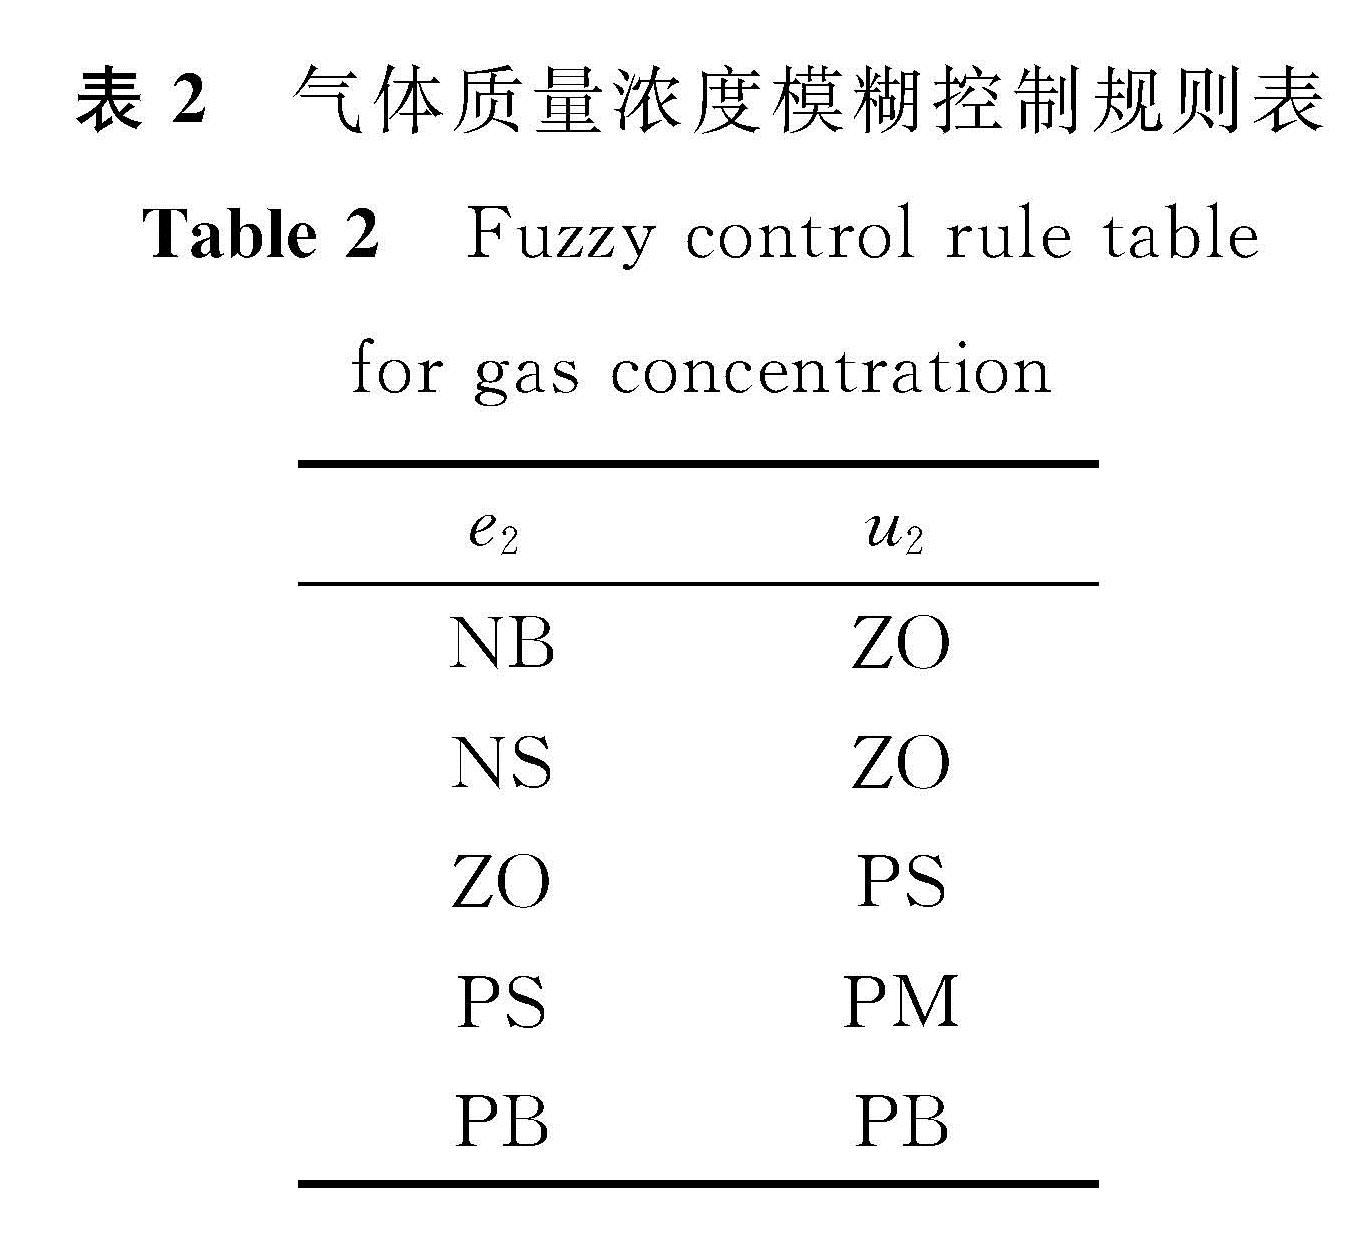 表2 气体质量浓度模糊控制规则表<br/>Table 2 Fuzzy control rule table for gas concentration